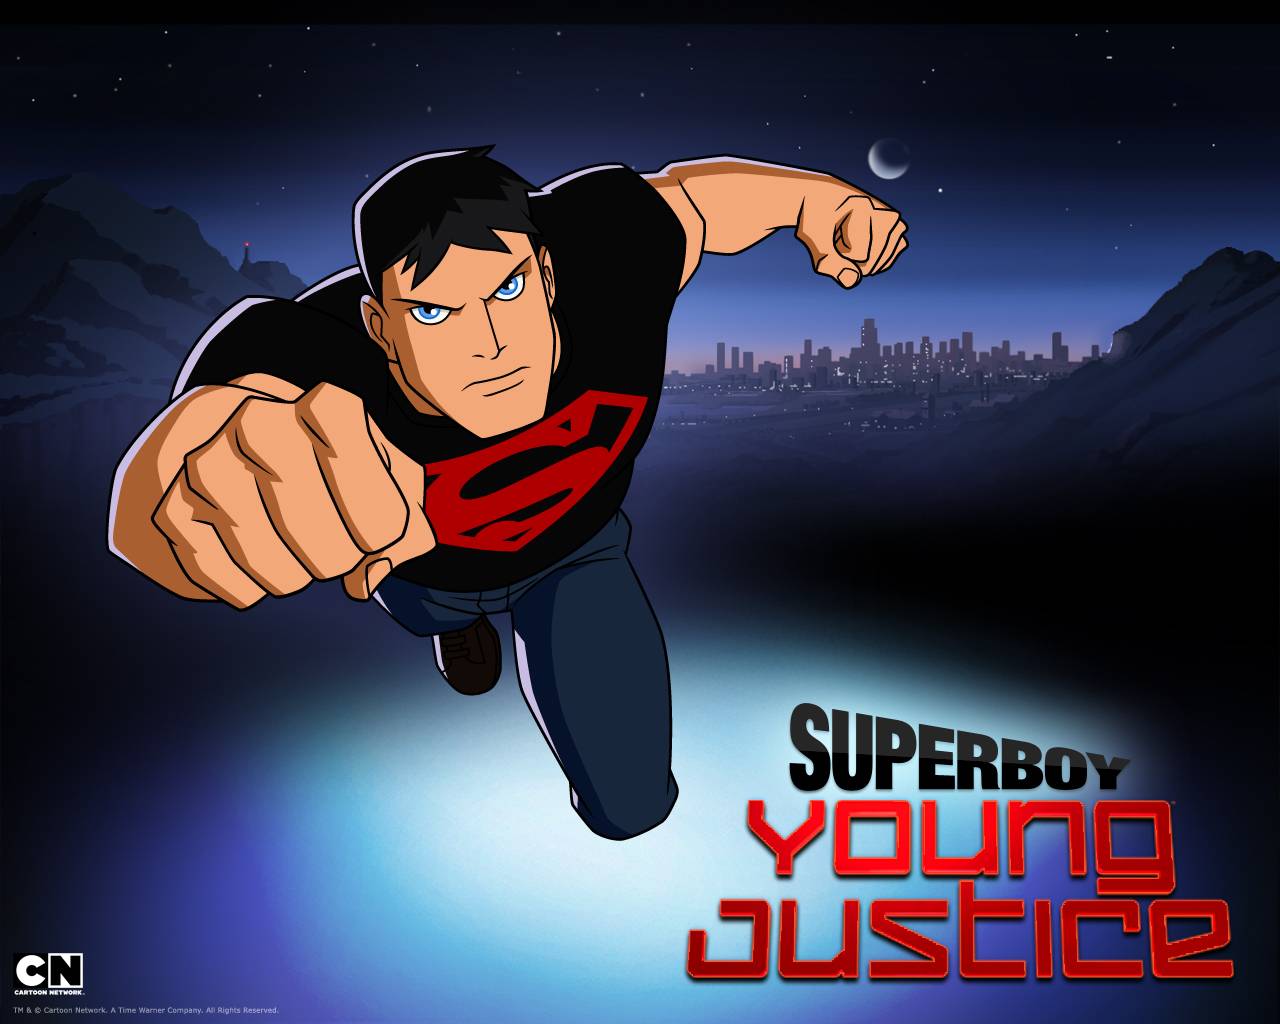 Superboy. Justice Wallpaper